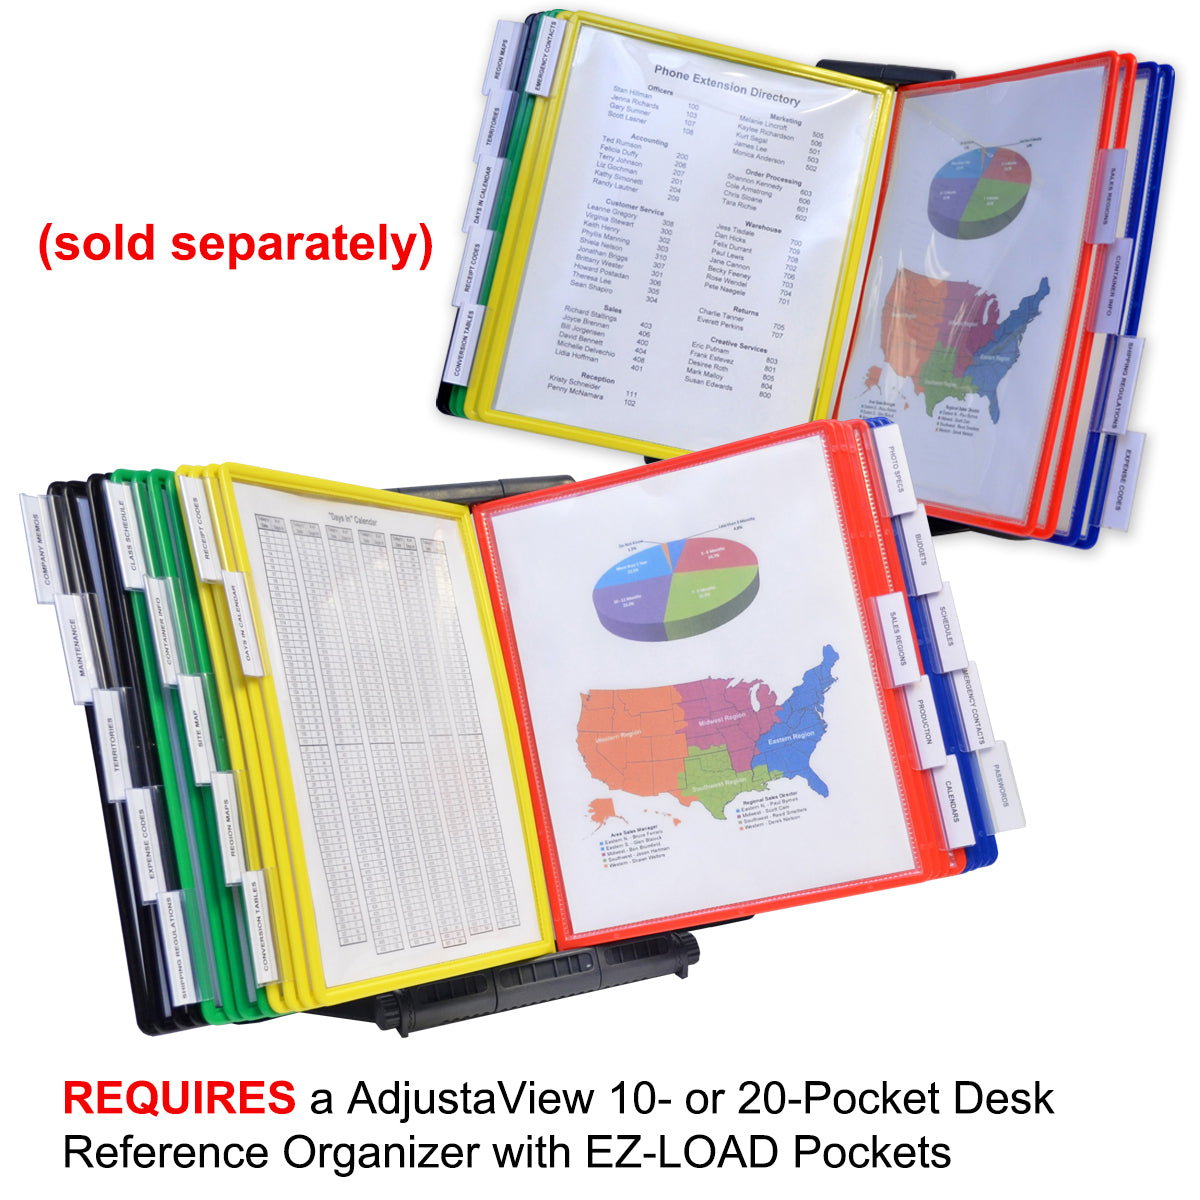 AdjustaView 10-Pocket Desk Reference Organizer